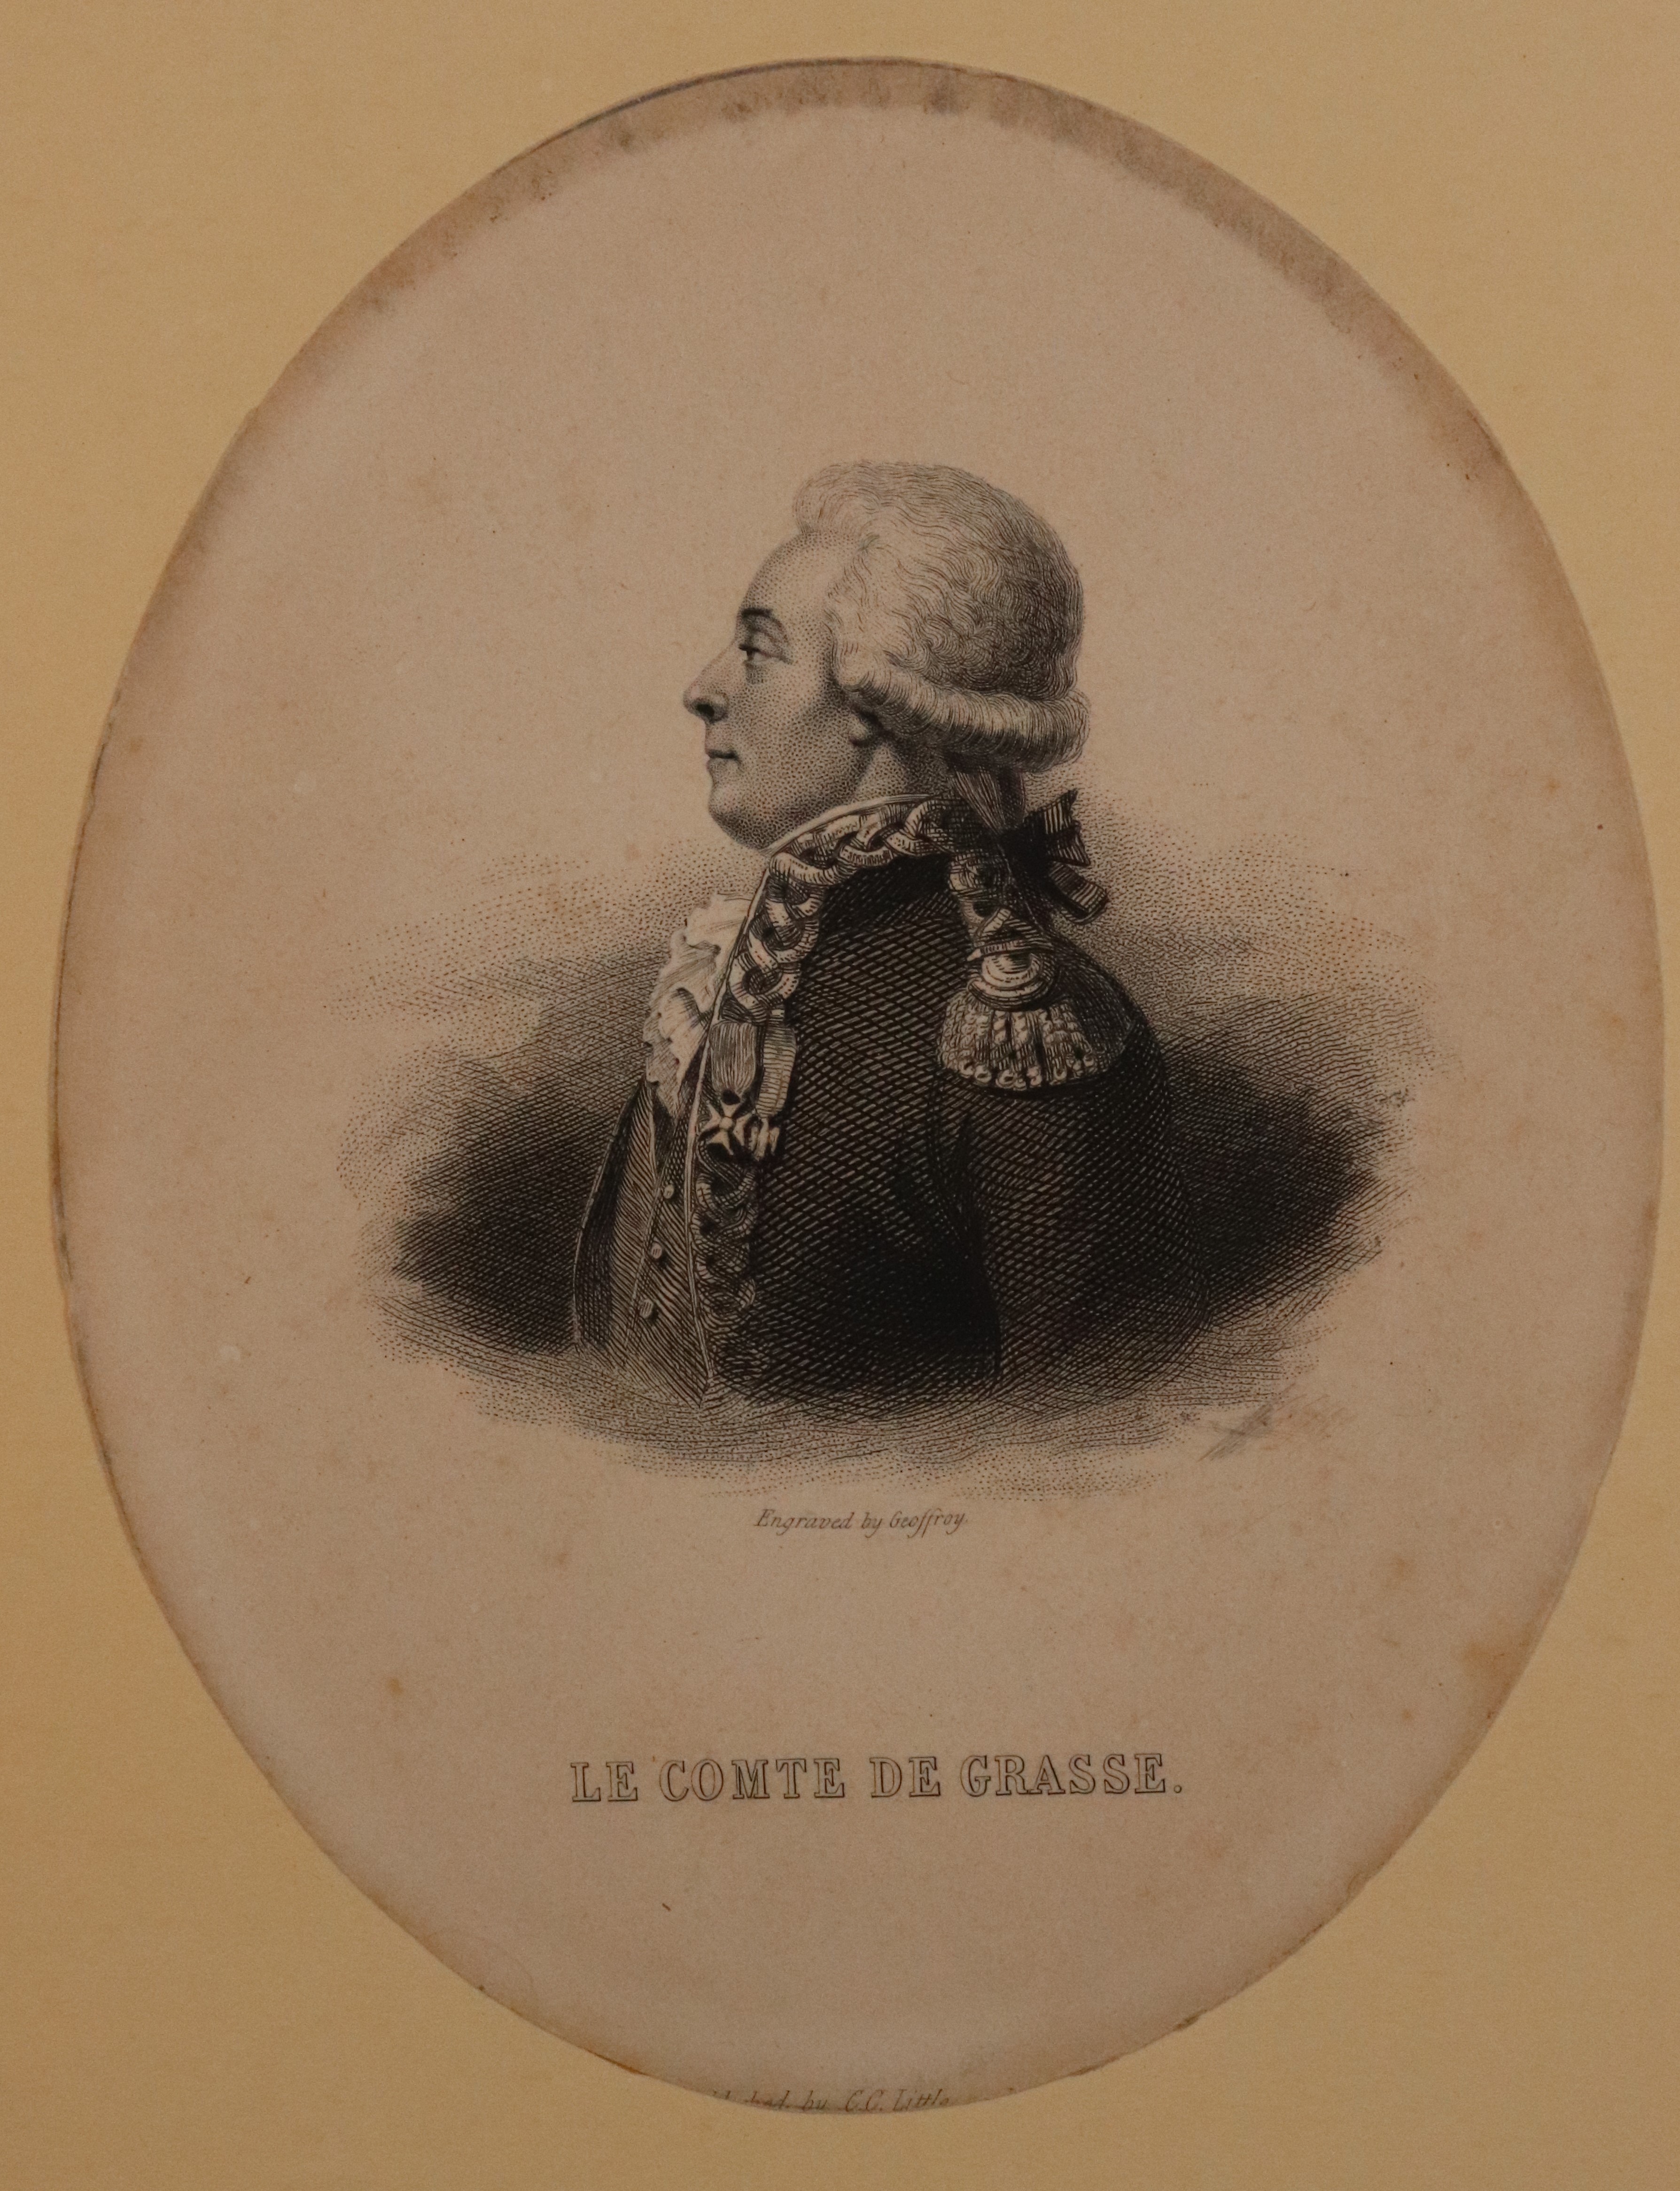 Oval shaped portrait of Le Comte de Grasse